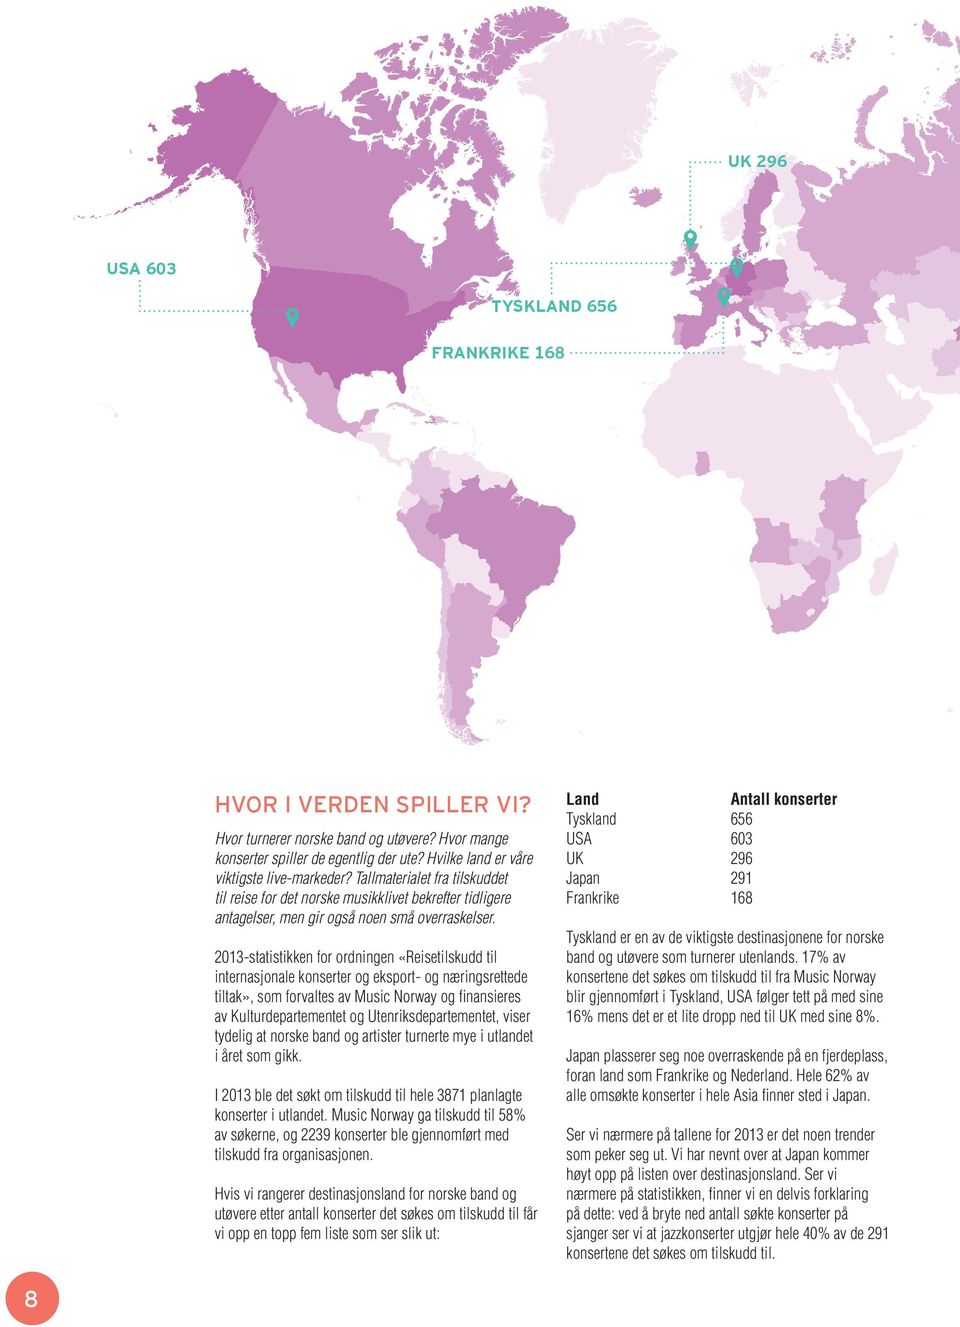 2013-statistikken for ordningen «Reisetilskudd til internasjonale konserter og eksport- og næringsrettede tiltak», som forvaltes av Music Norway og finansieres av Kulturdepartementet og